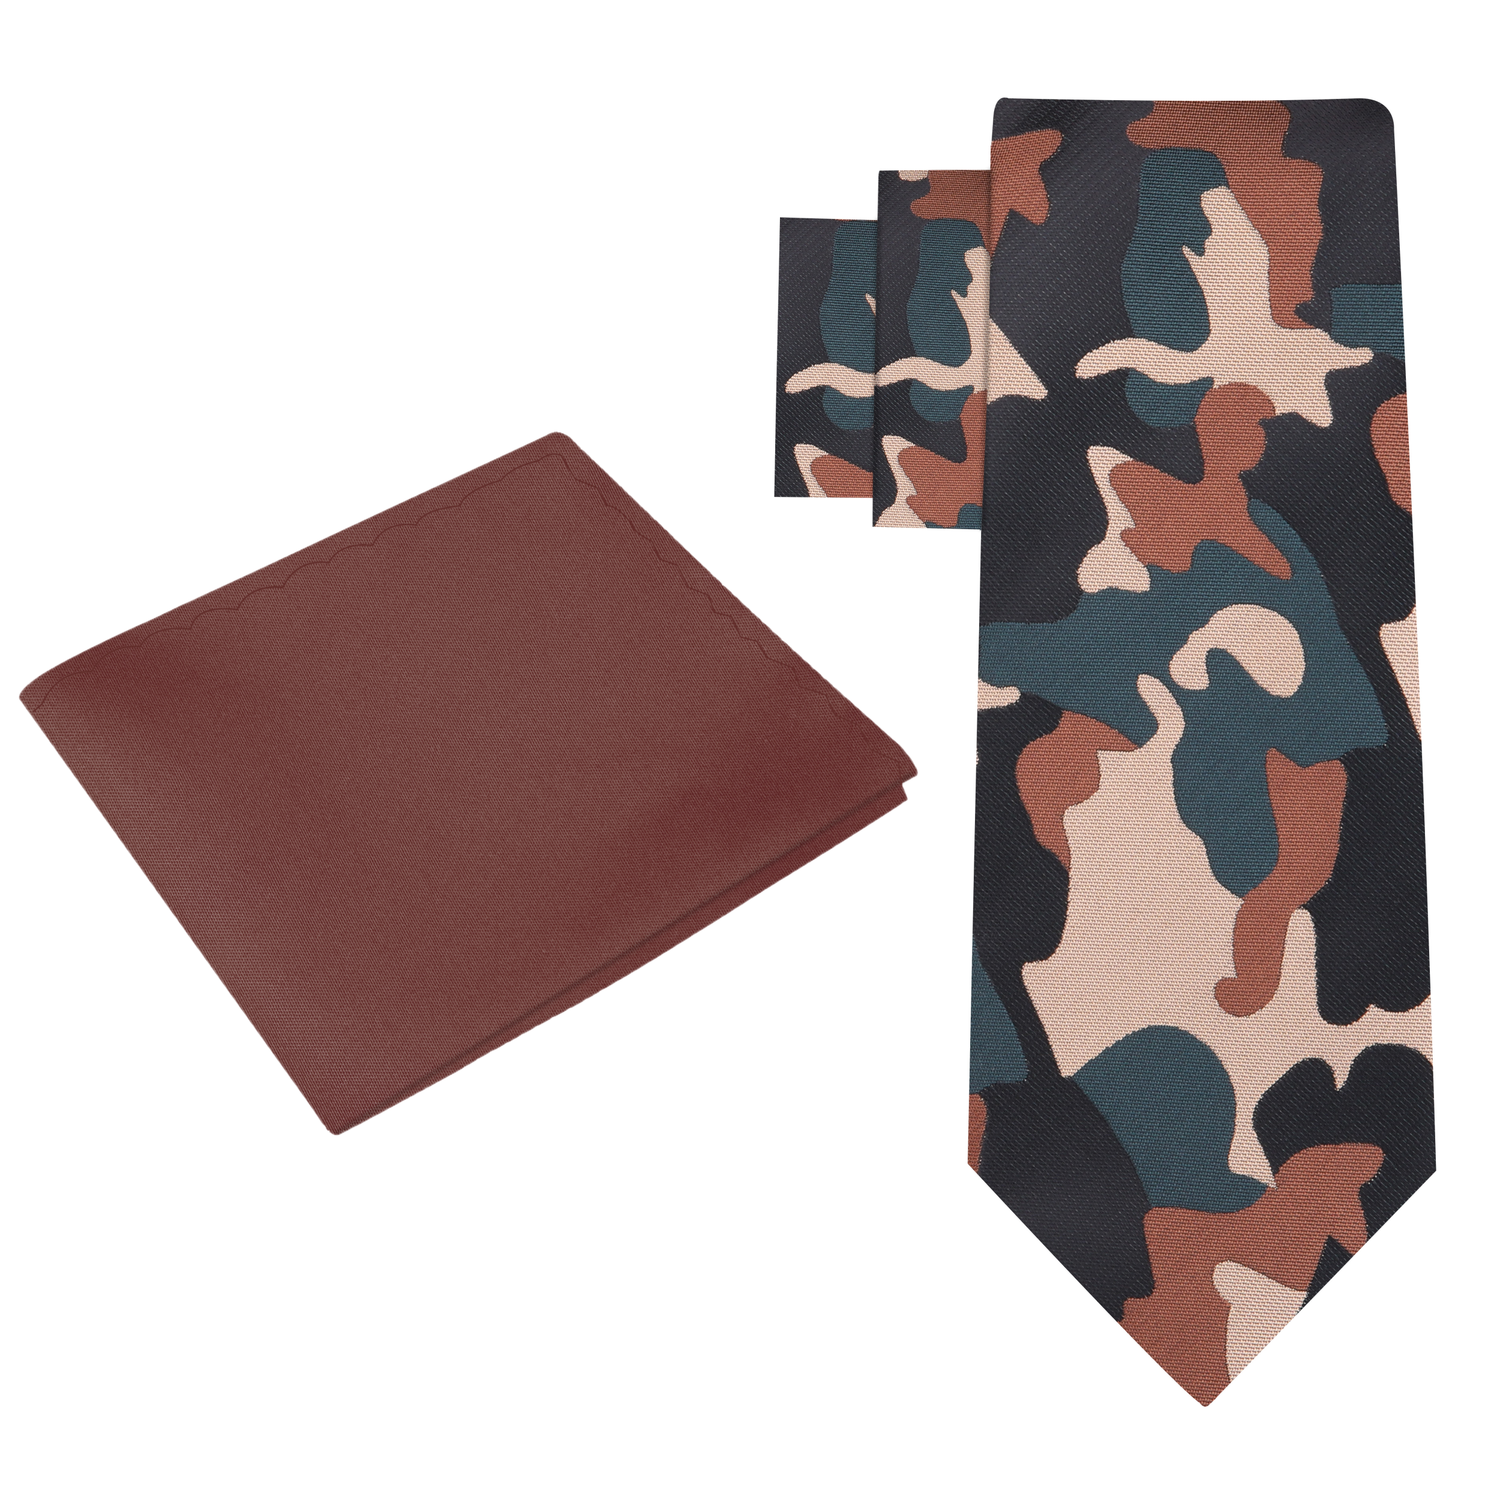 Alt View: Brown, Black, Green Camouflage Necktie and Brown Necktie